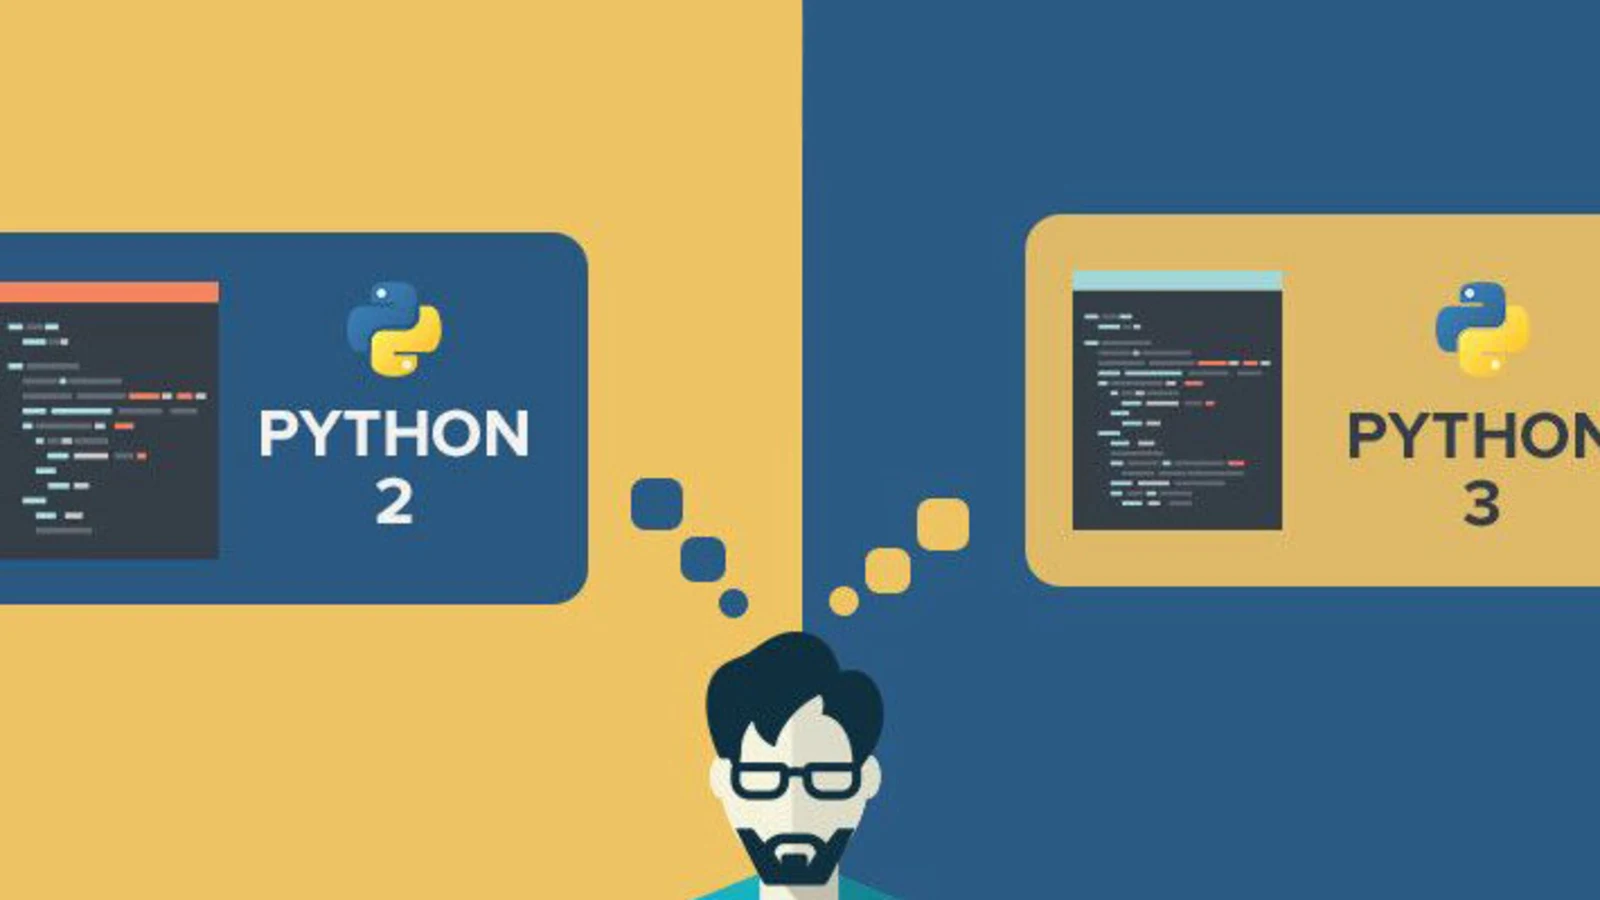 Python 2 and Python 3